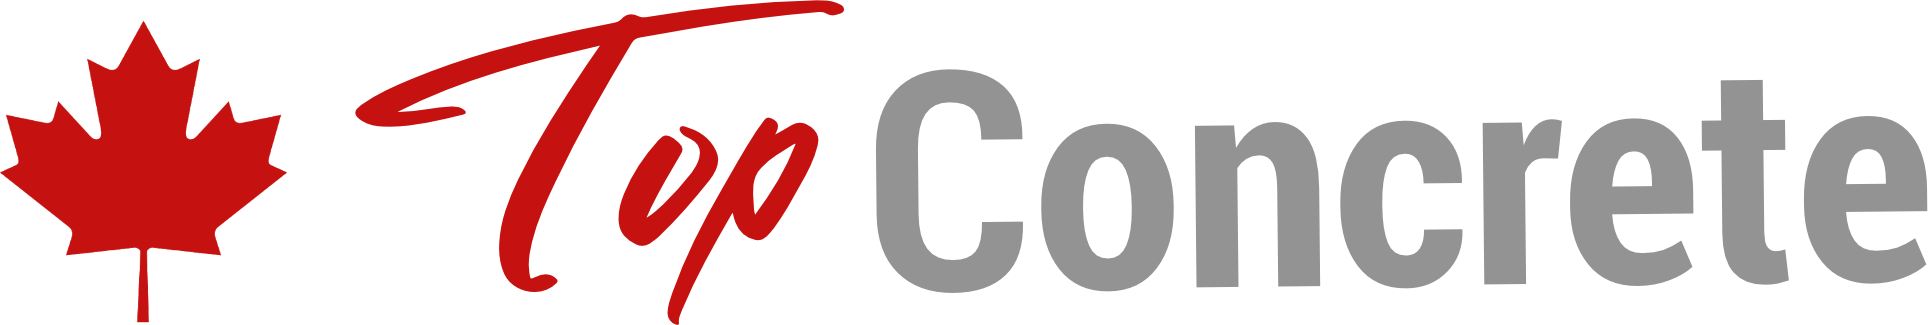 top-concrete-logo